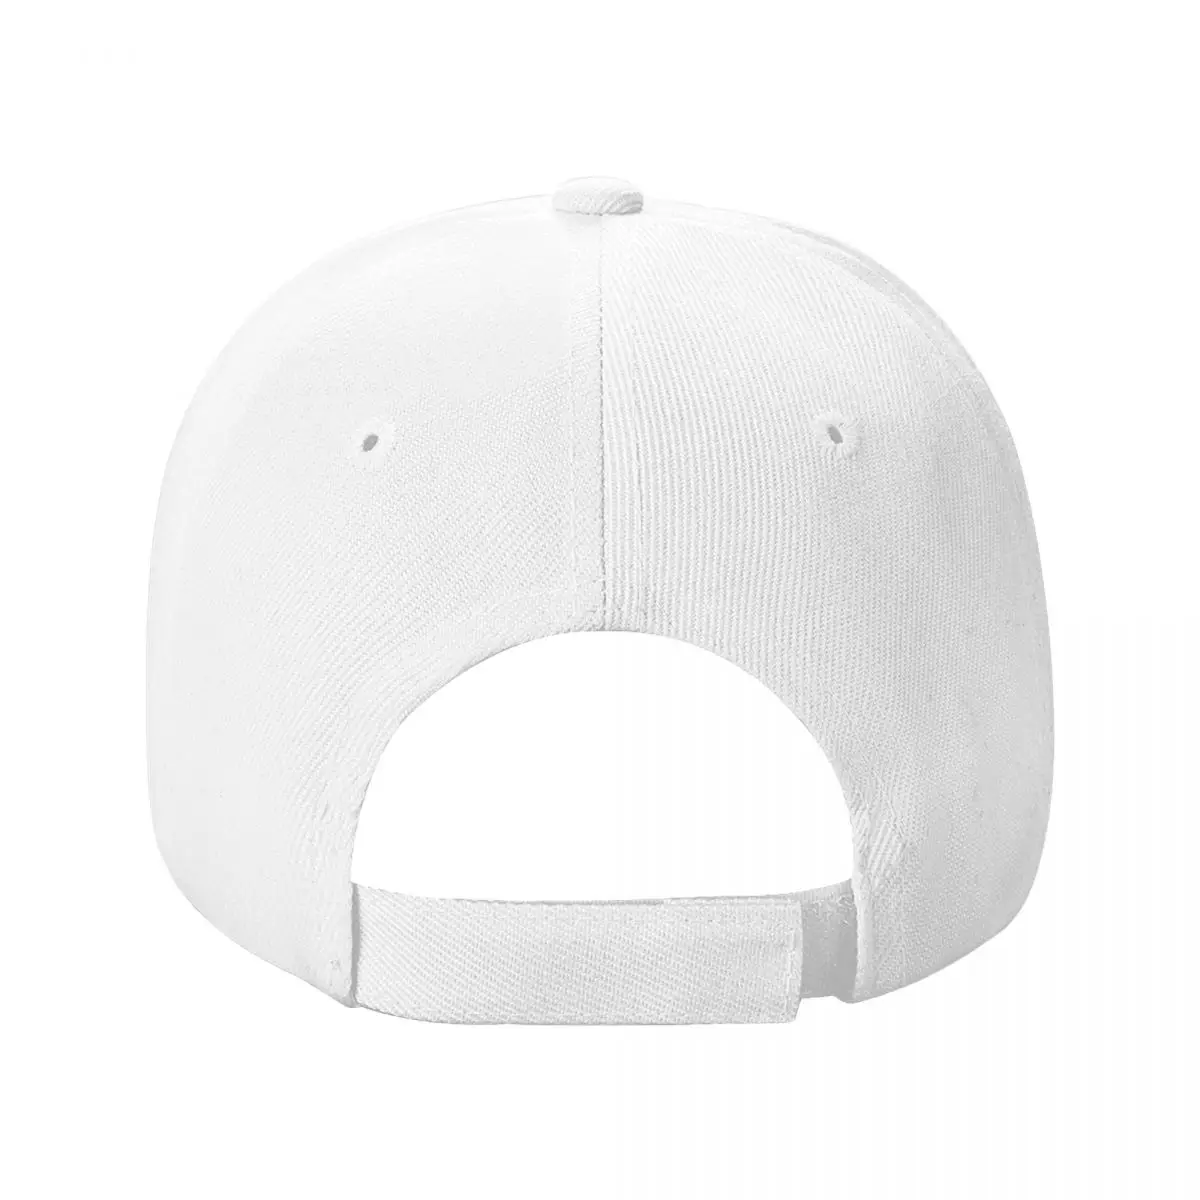 Бейсболка LIV Sunhat пользовательские шляпы Роскошная женская шляпа мужская